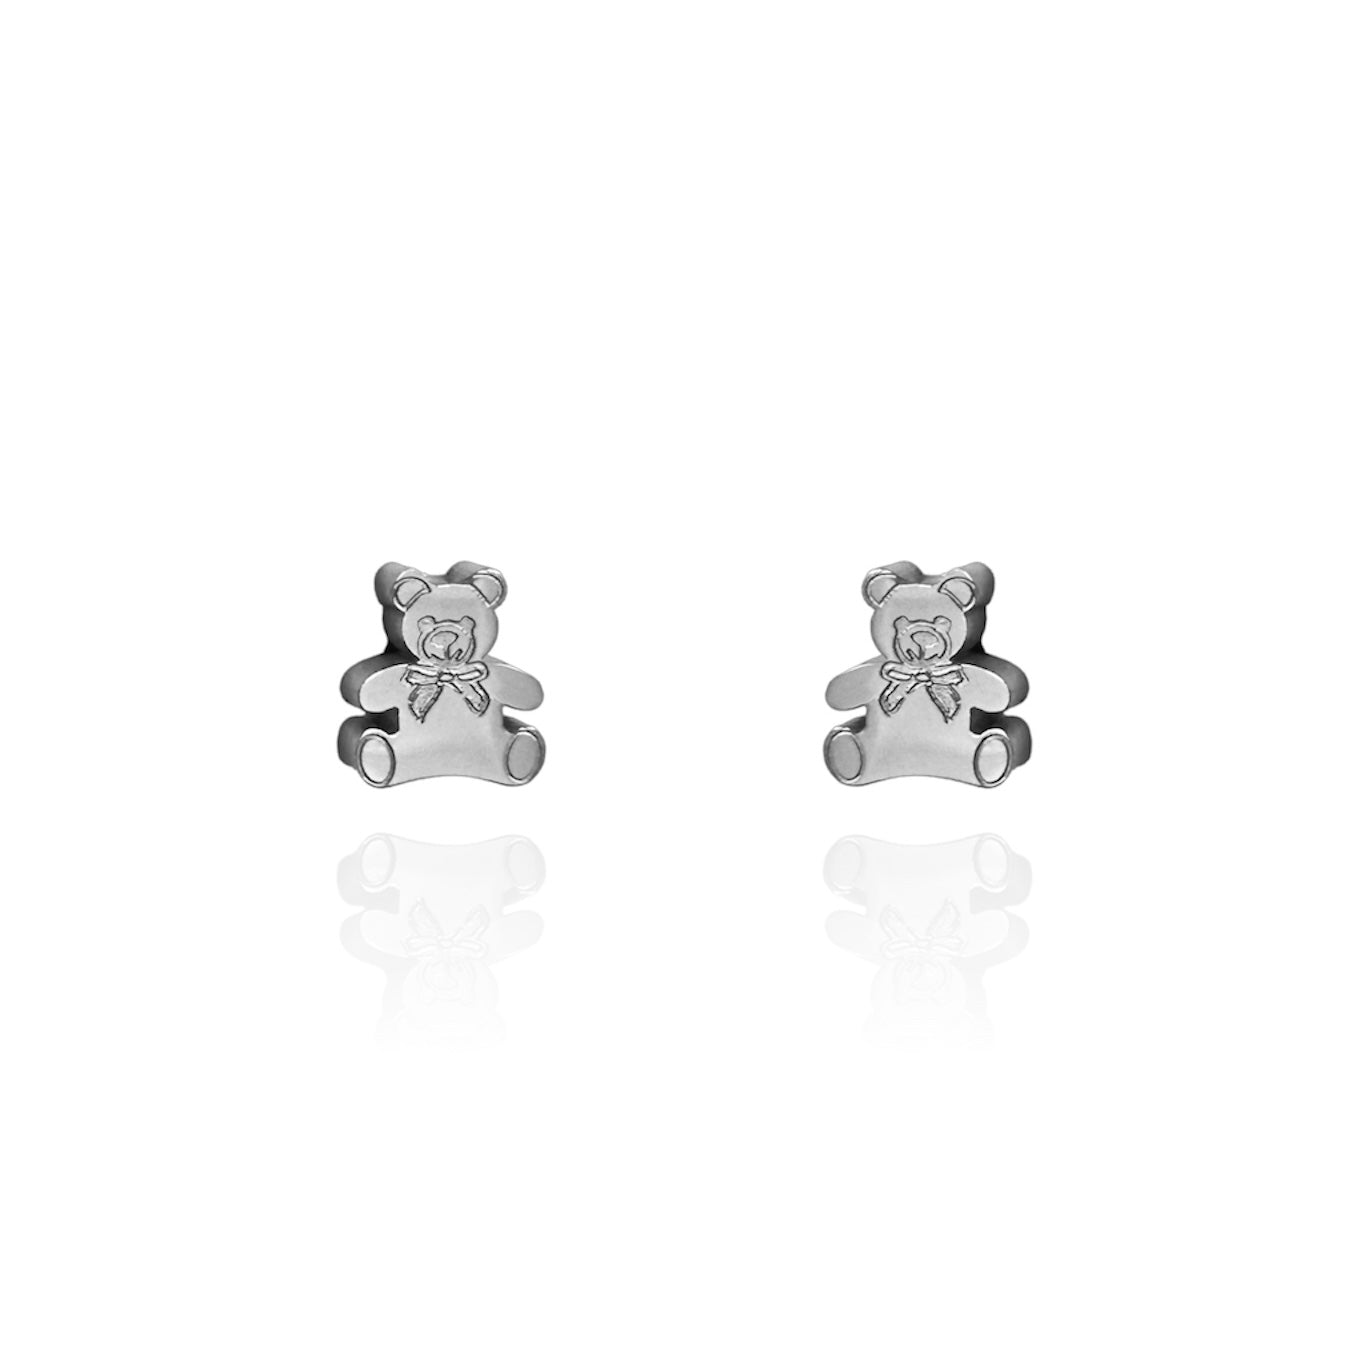 Teddy Bear Earring Studs Silver